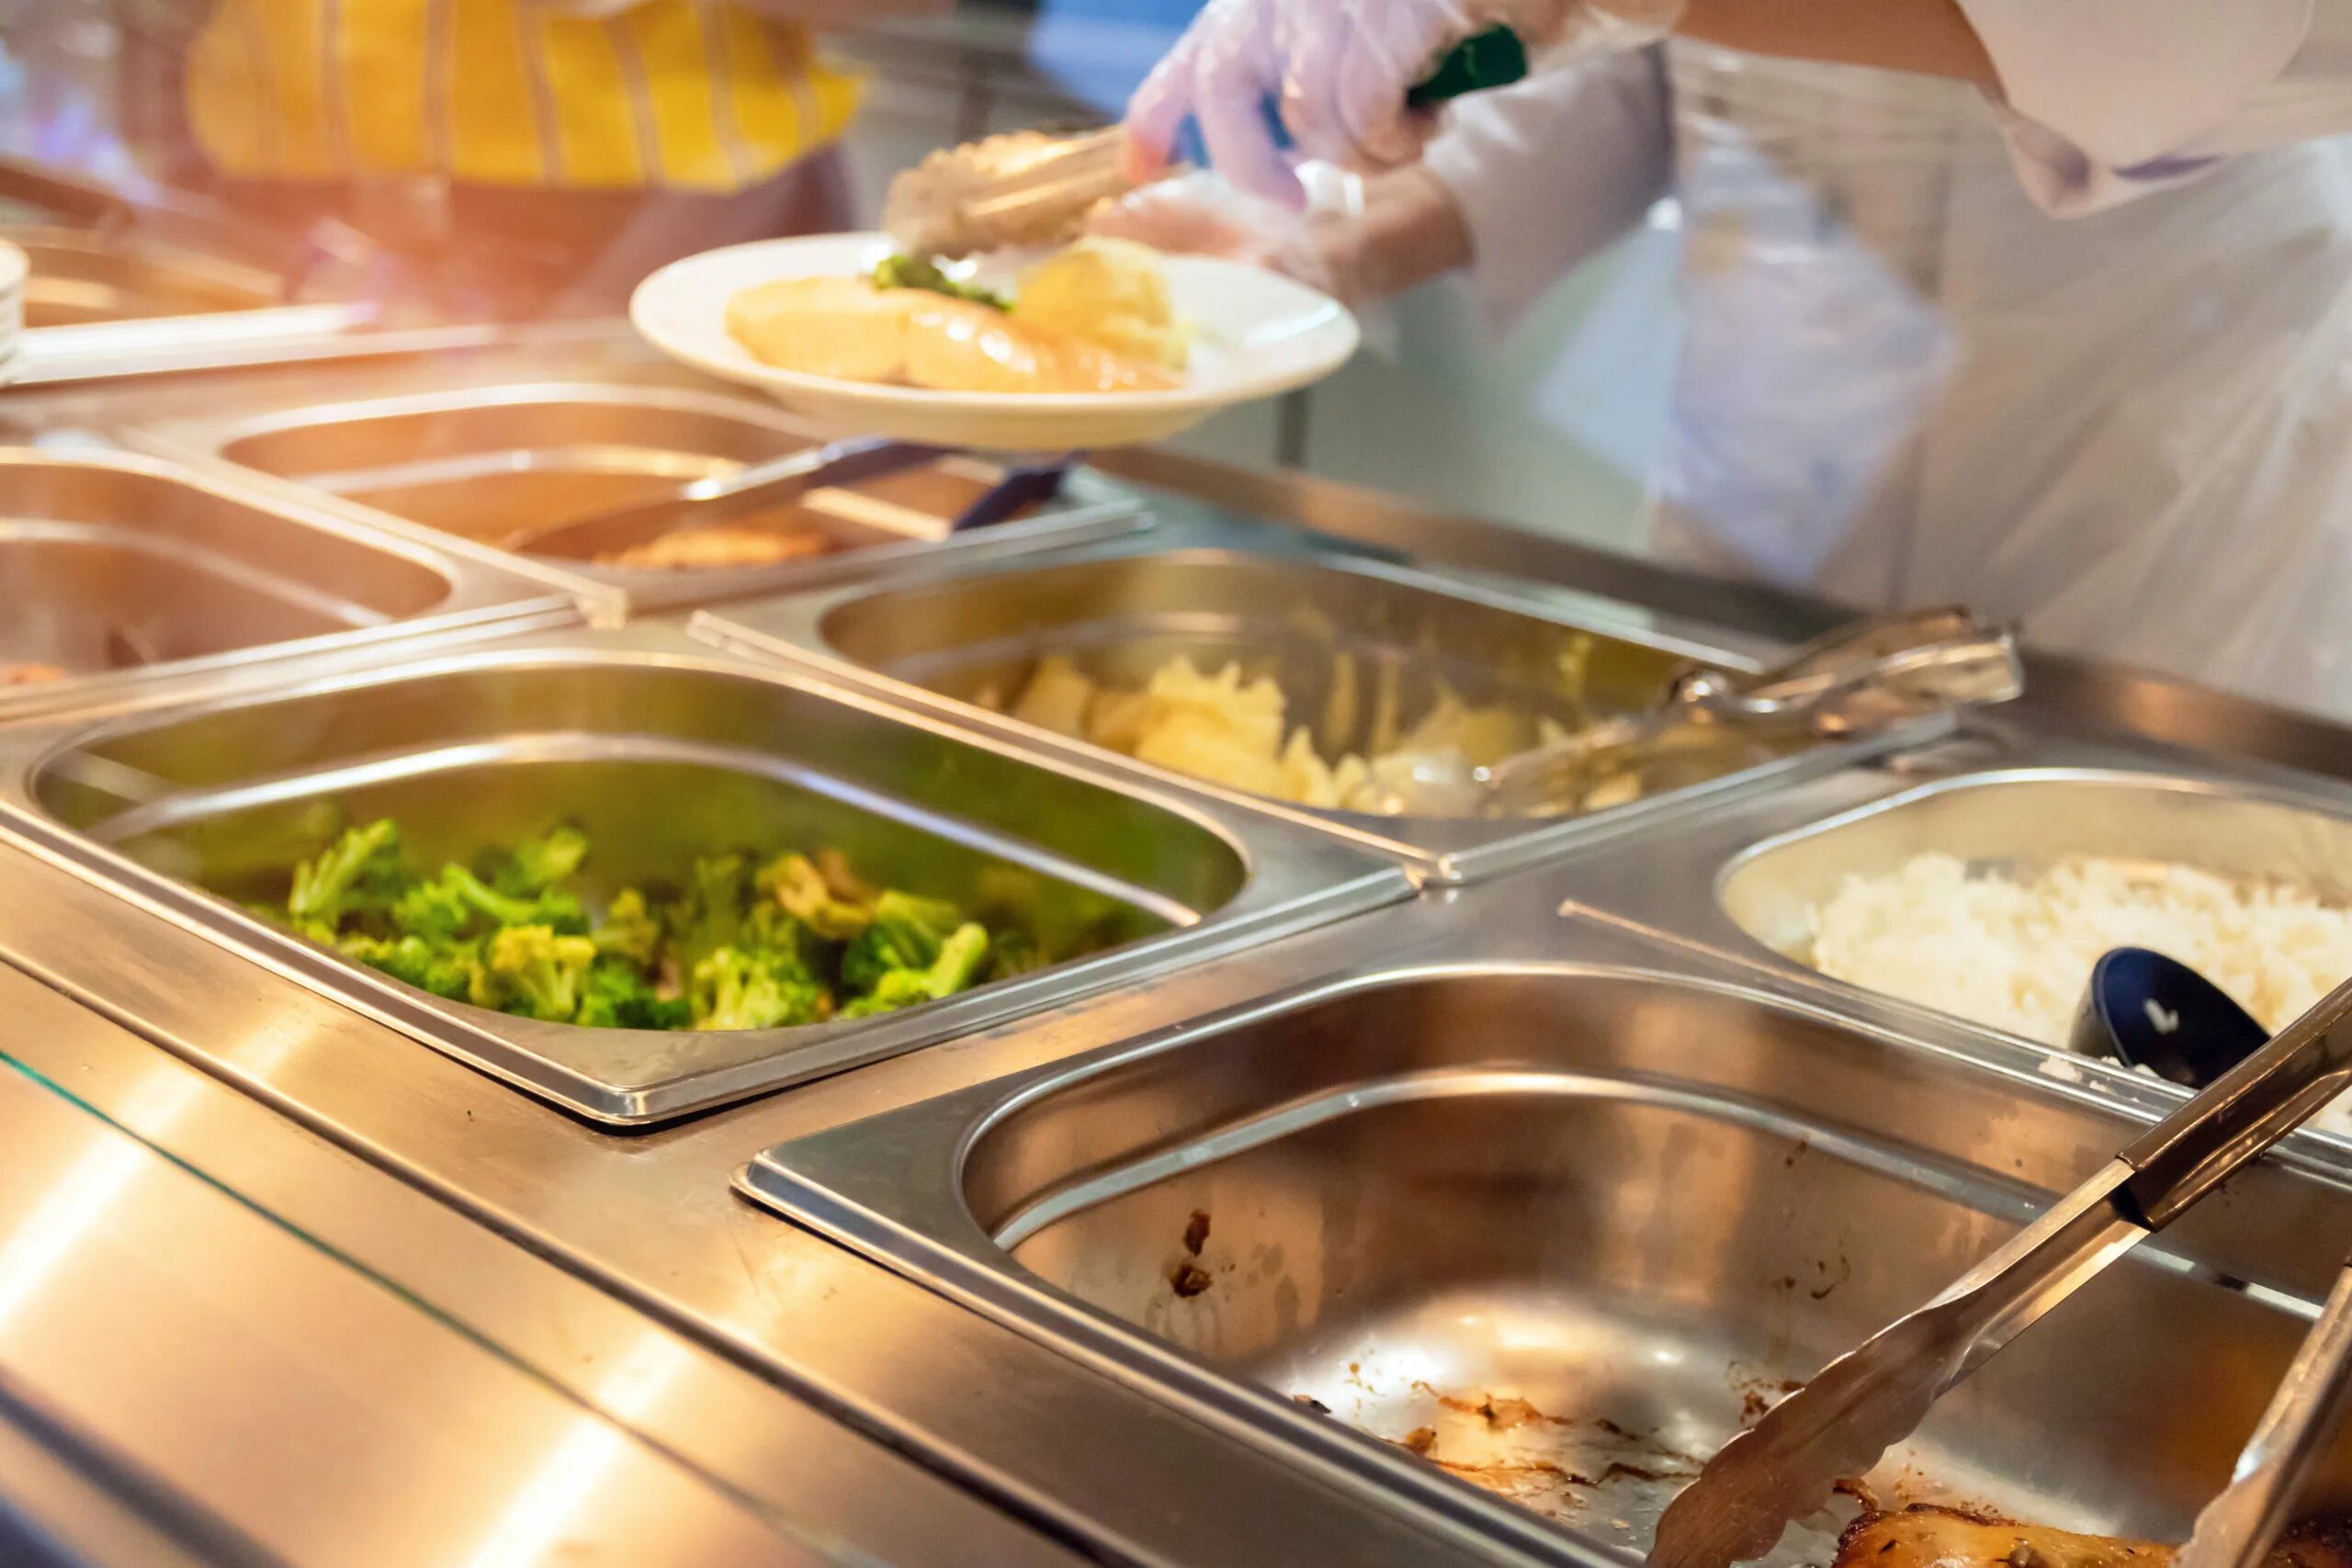 Блюда для школьного питания. Шведский стол в школьной столовой. Столовая еда в школе. Питание в школьной столовой. Еда в столовой в школе.